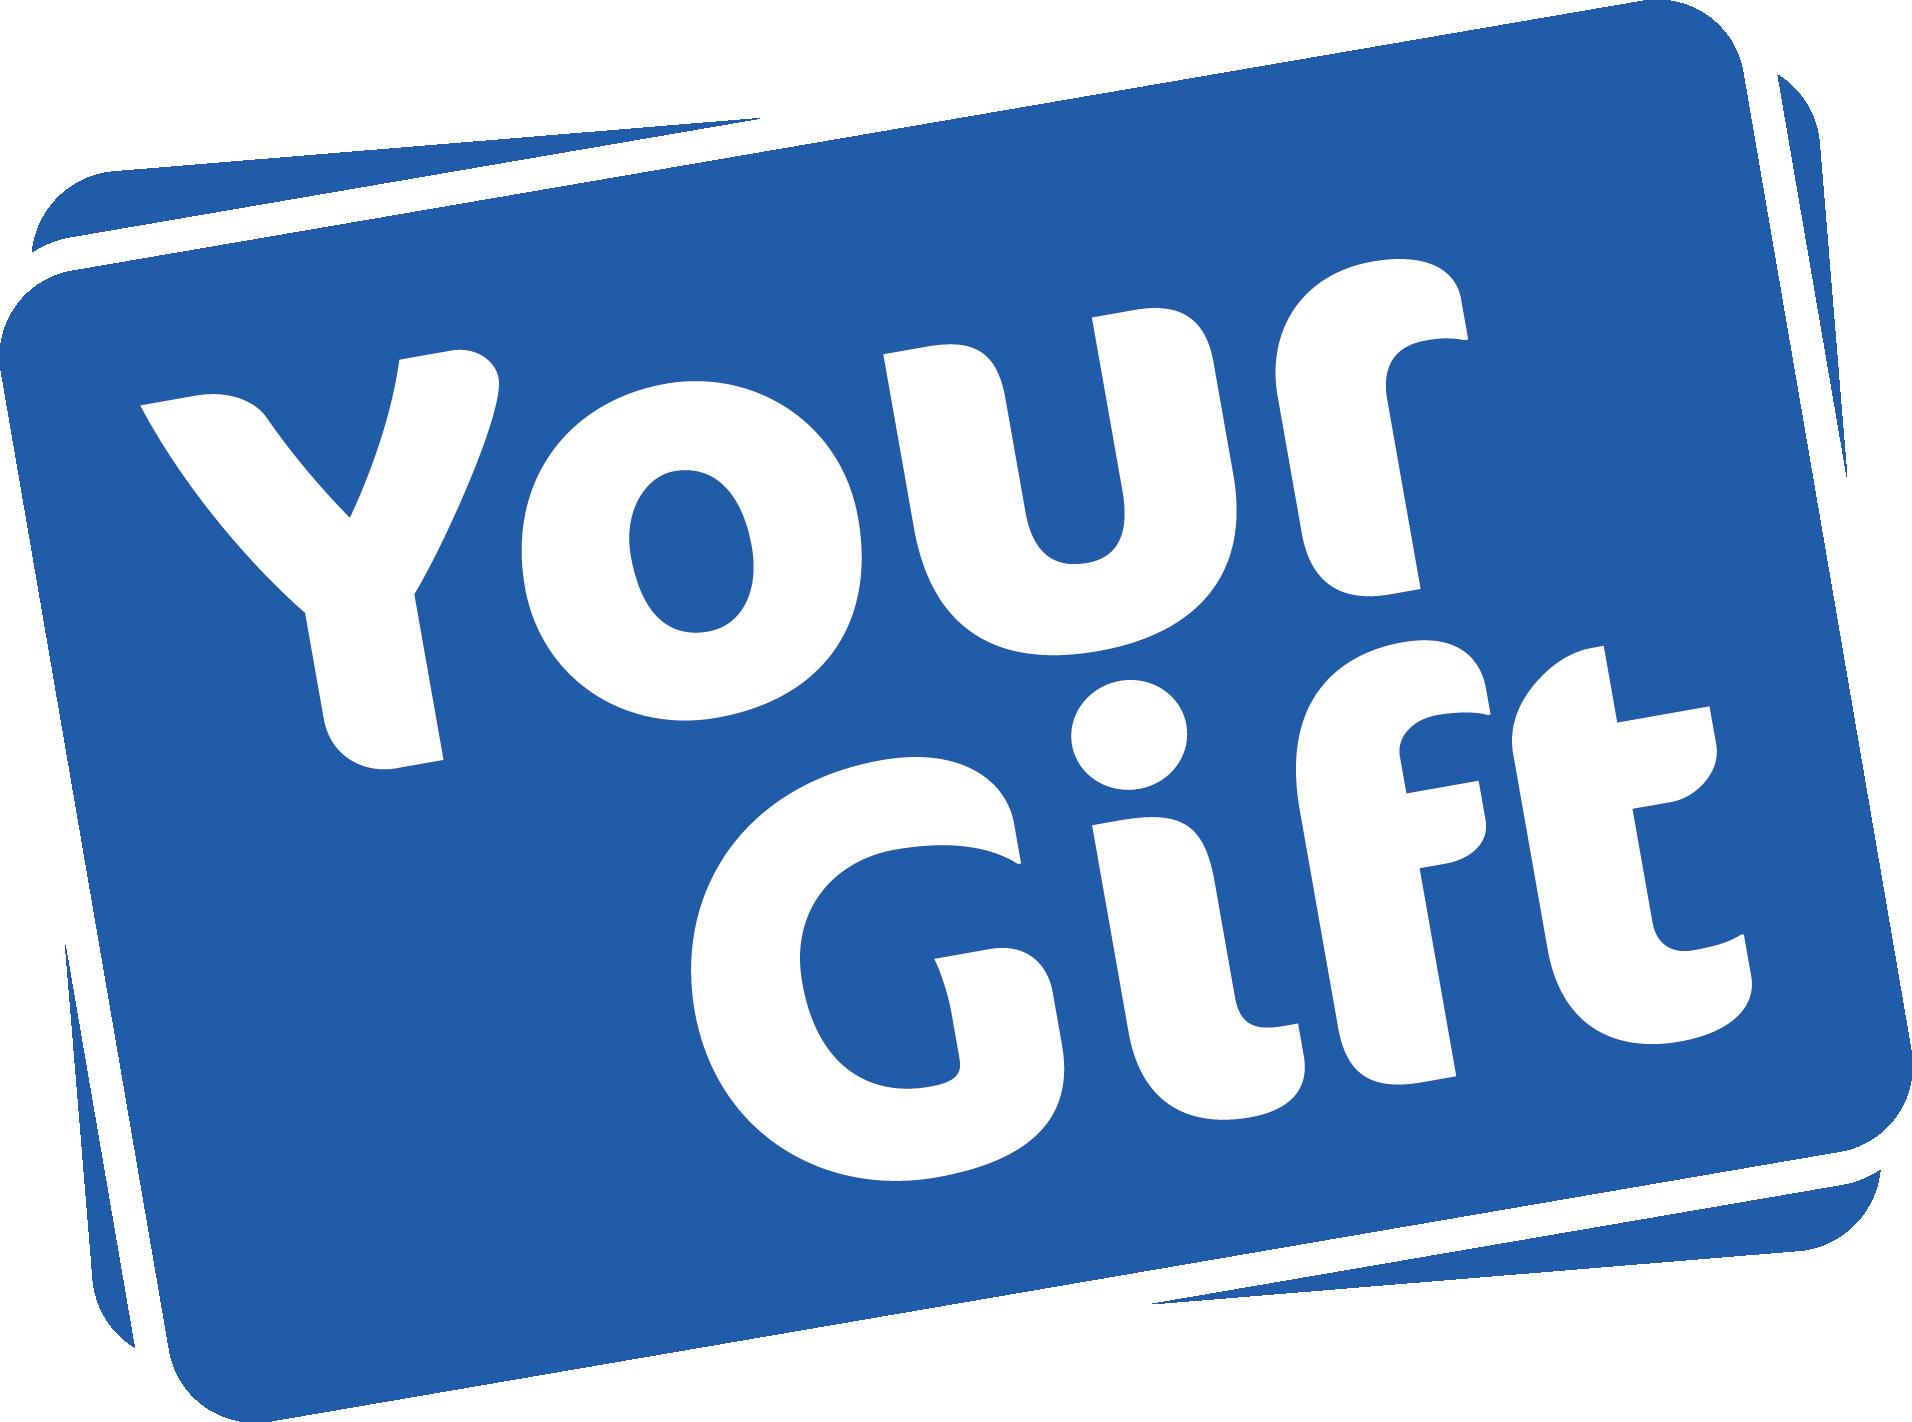 auditorium Verstelbaar ondersteboven YourGift Cards | Dé cadeaukaart die je nooit meer vergeet!